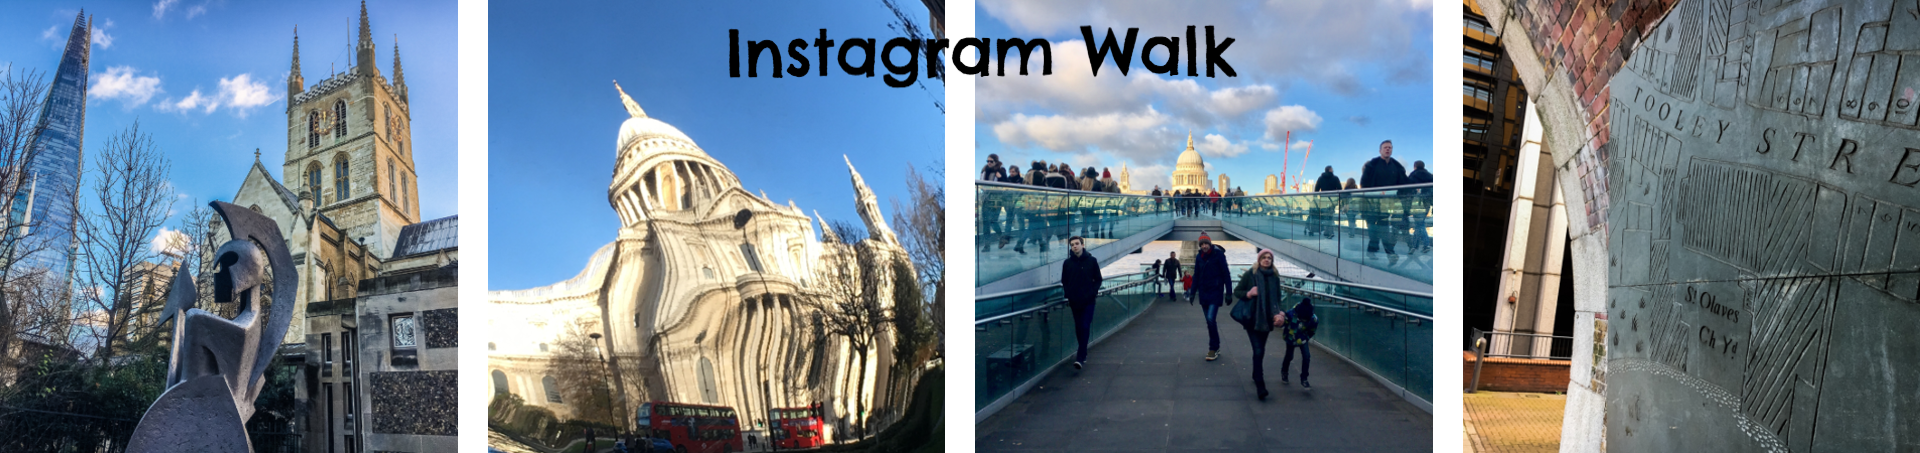 Instagram London Walk